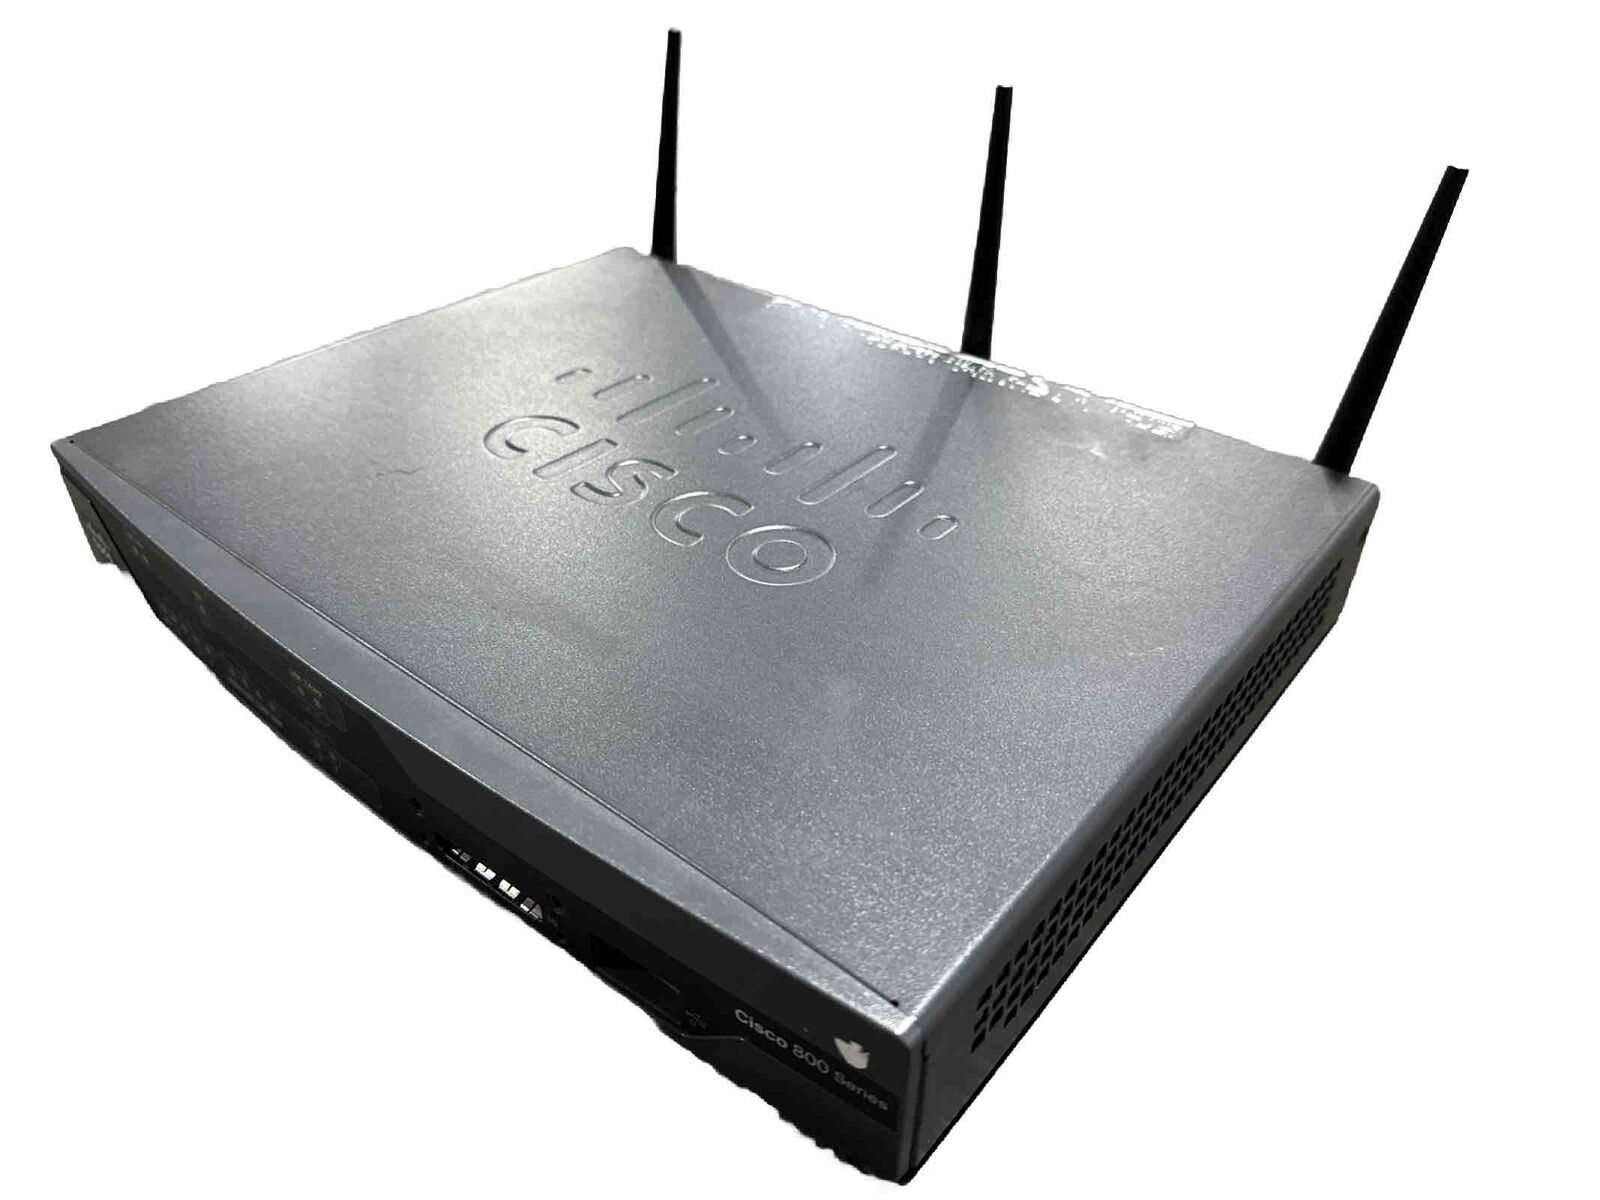 Cisco 881W 4-Port 10/100 Wireless N Router (C881W-A-K9)